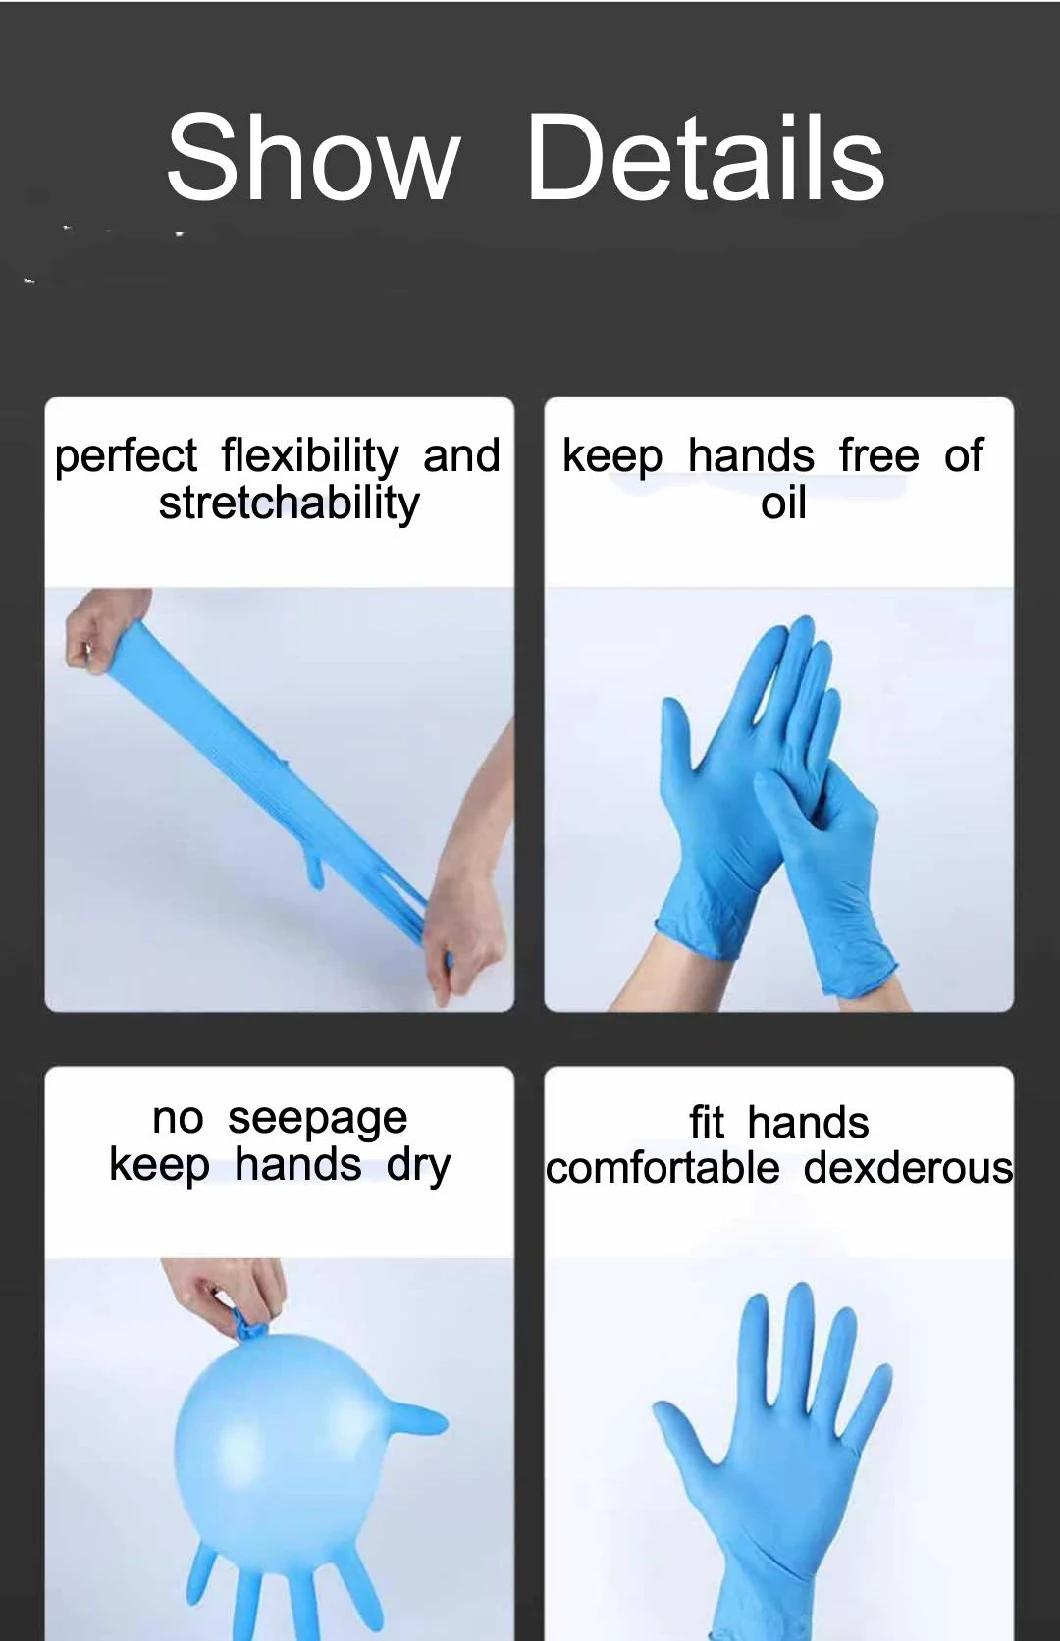 Powder Free Disposable Nitrile Blend Gloves Medical Nitrile Gloves